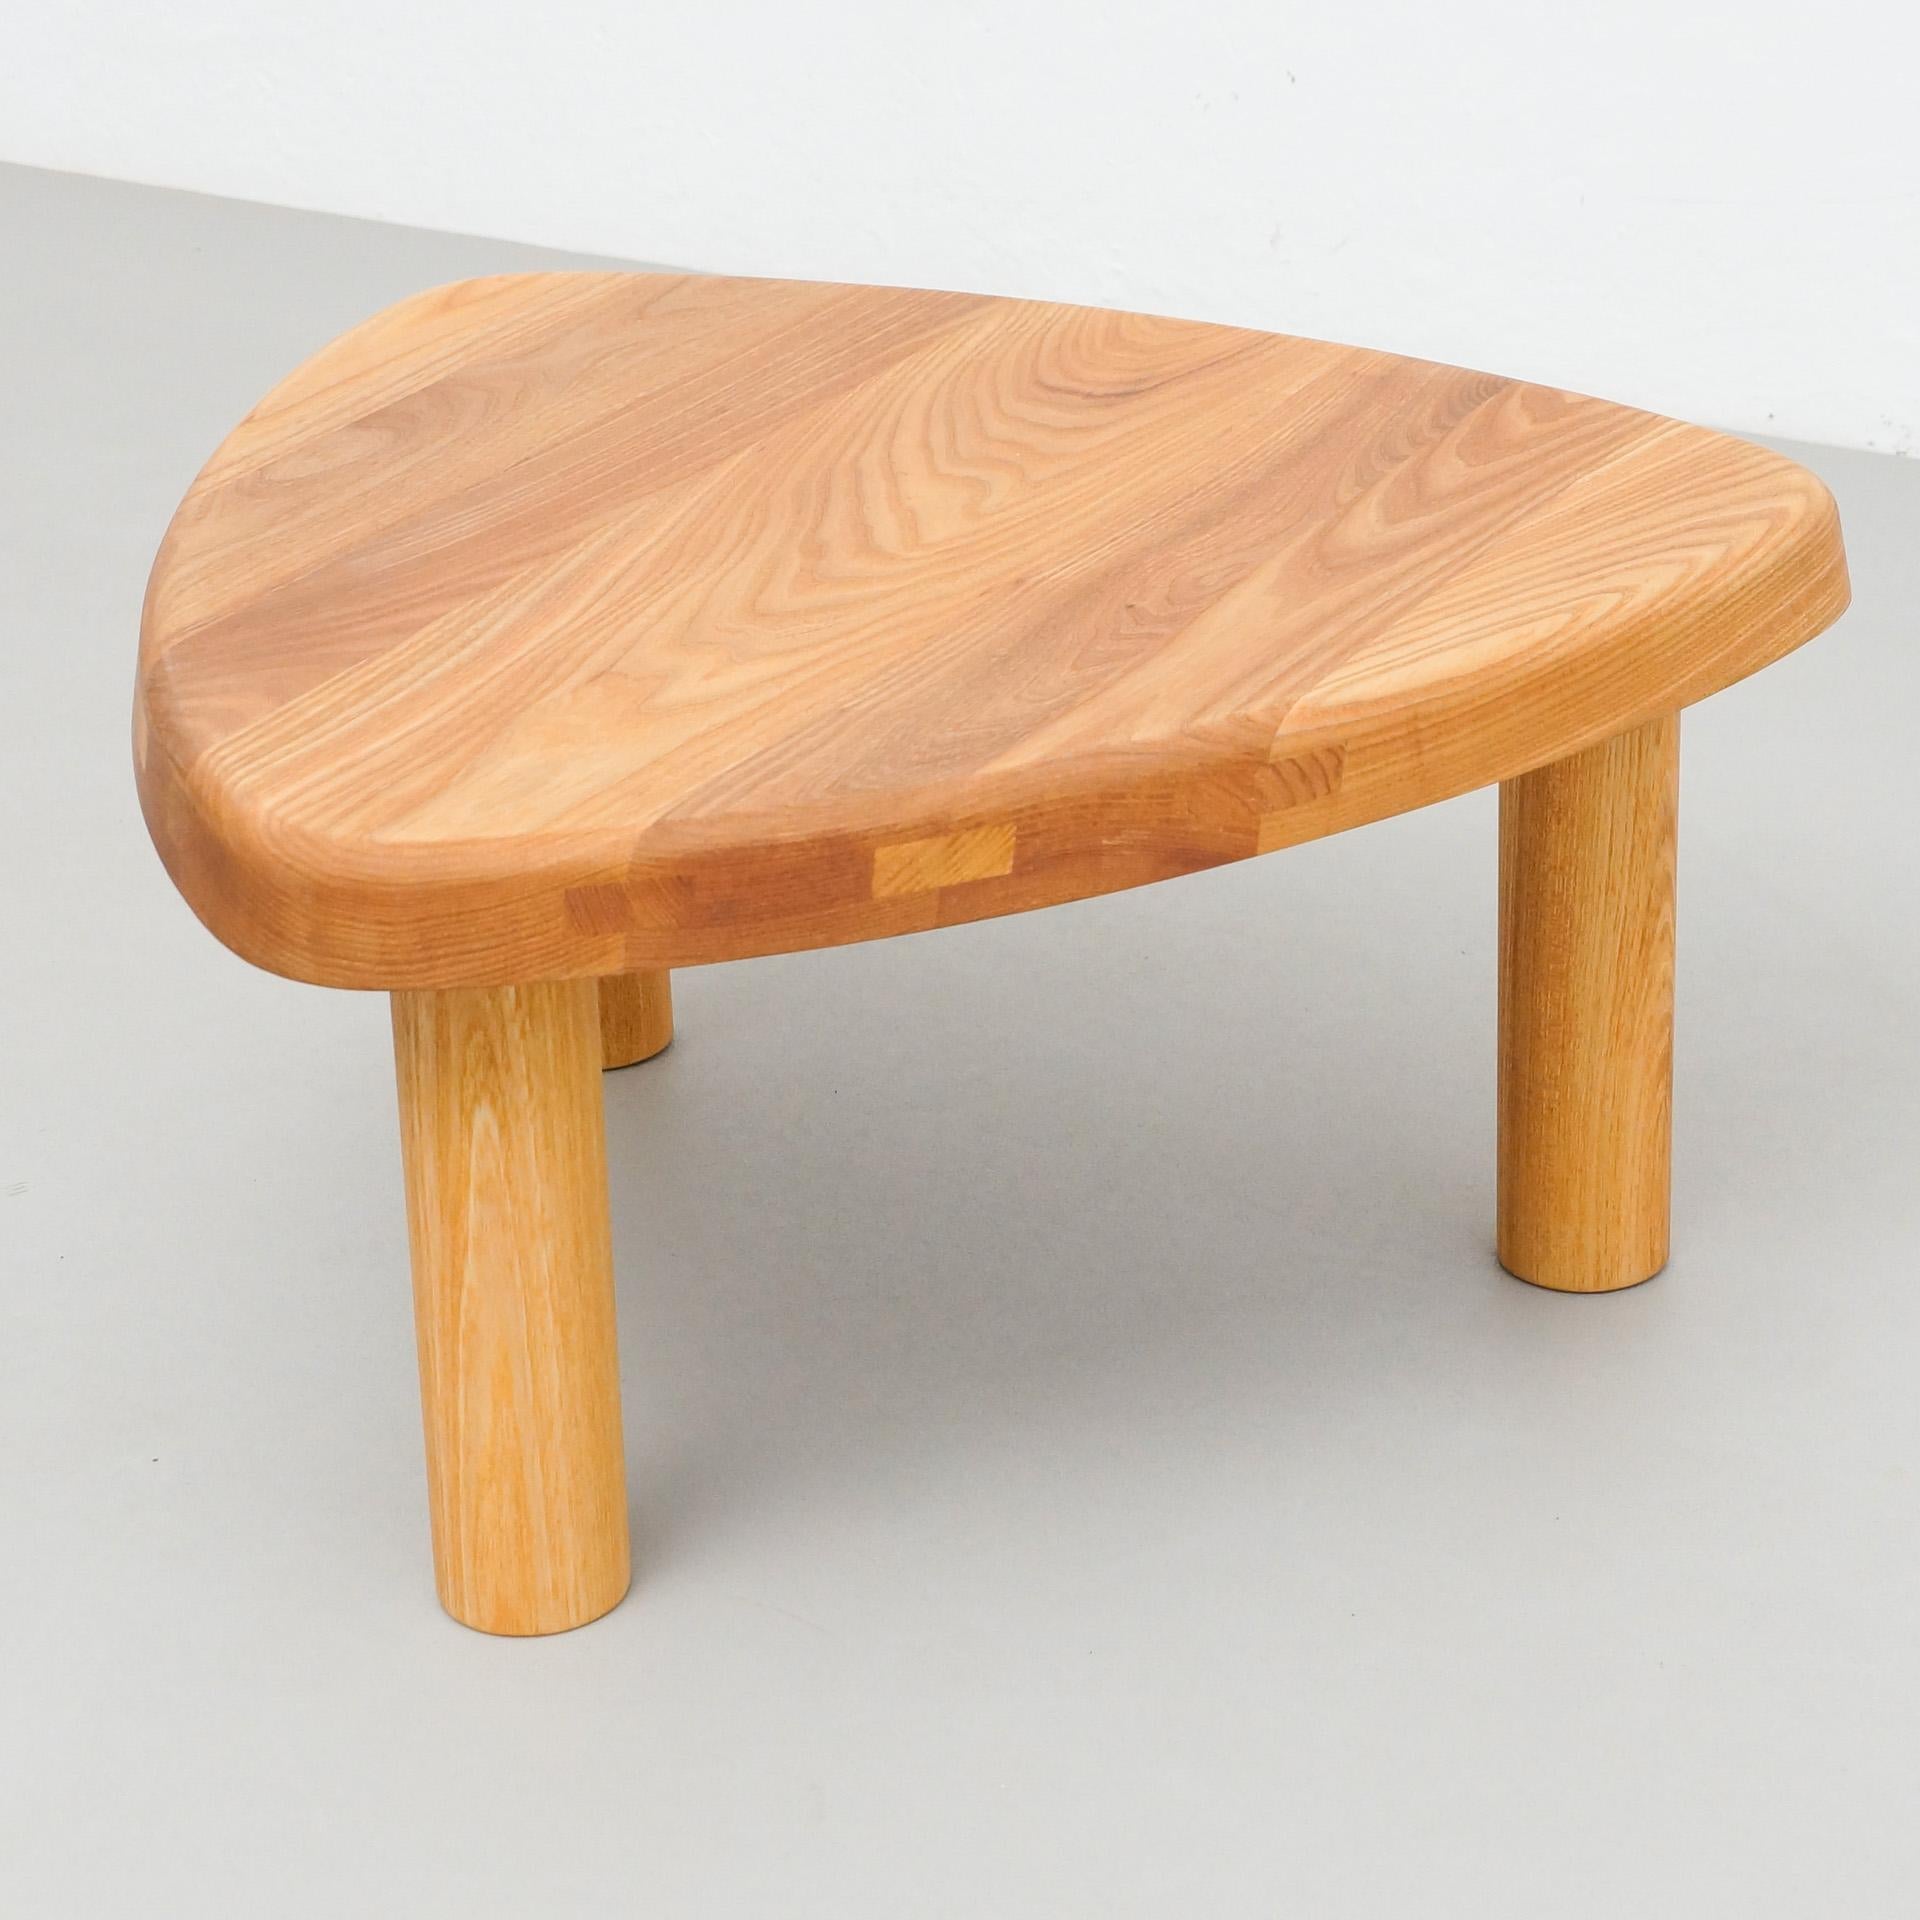 solid elm wood furniture